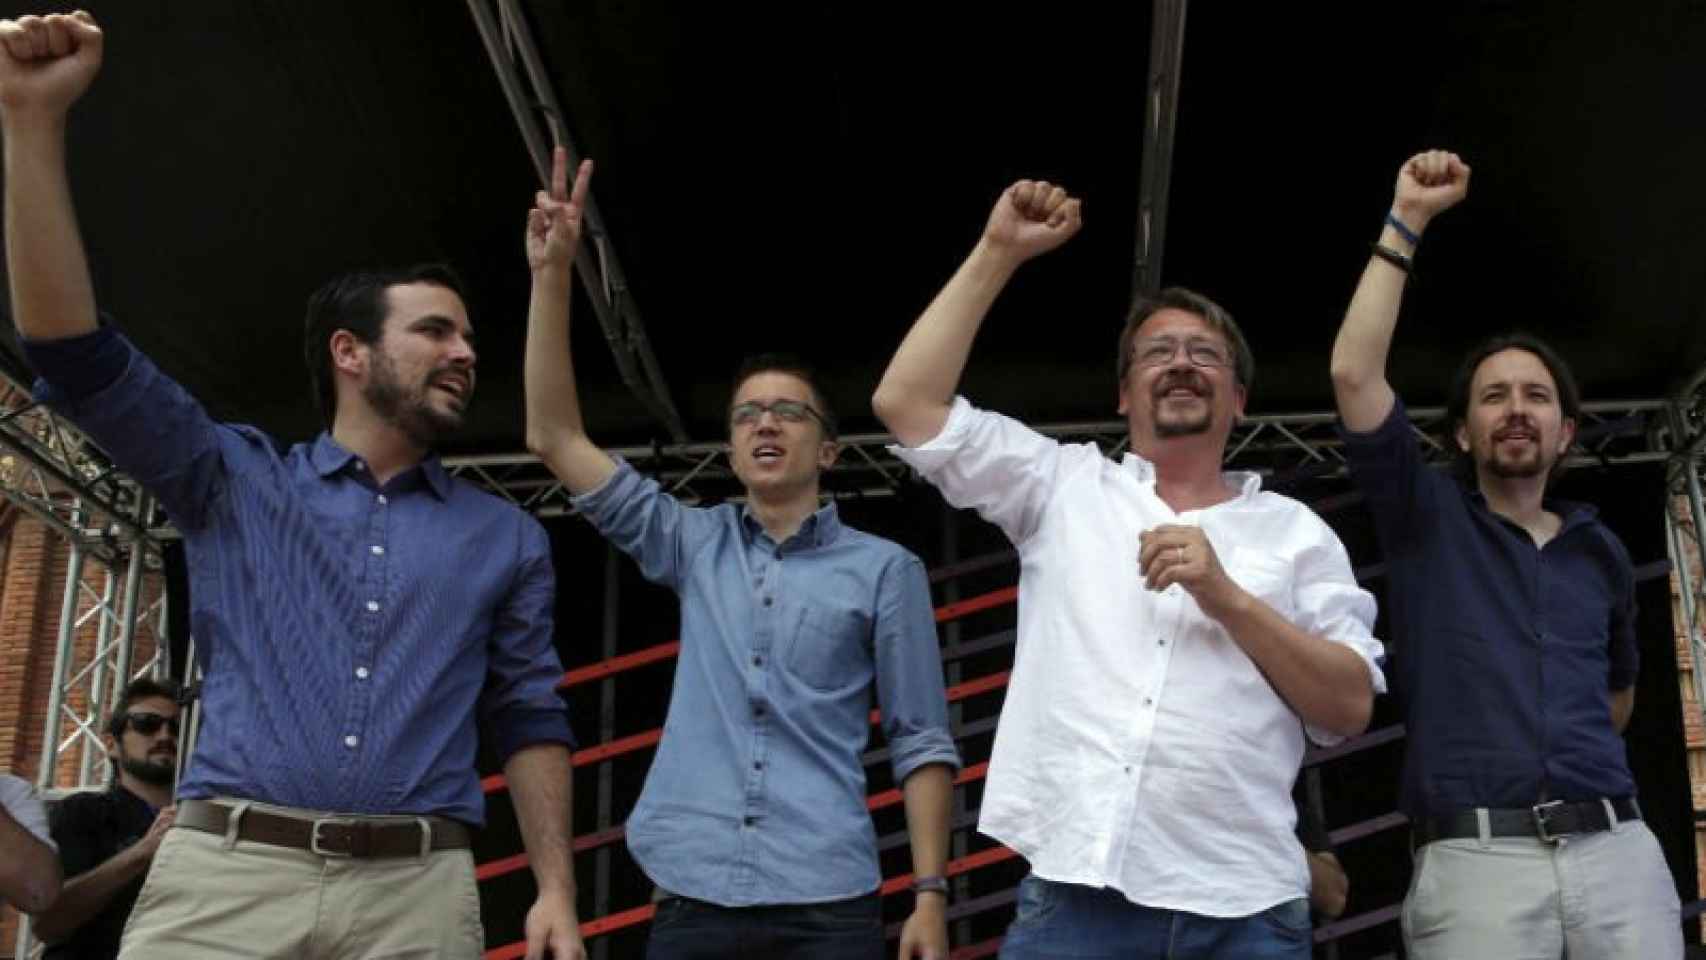 Los principales líderes de la coalición Unidos Podemos, Alberto Garzón, Xavier Domènech, Íñigo Errejón y Pablo Iglesias, durante el acto de este sábado de campaña electoral.